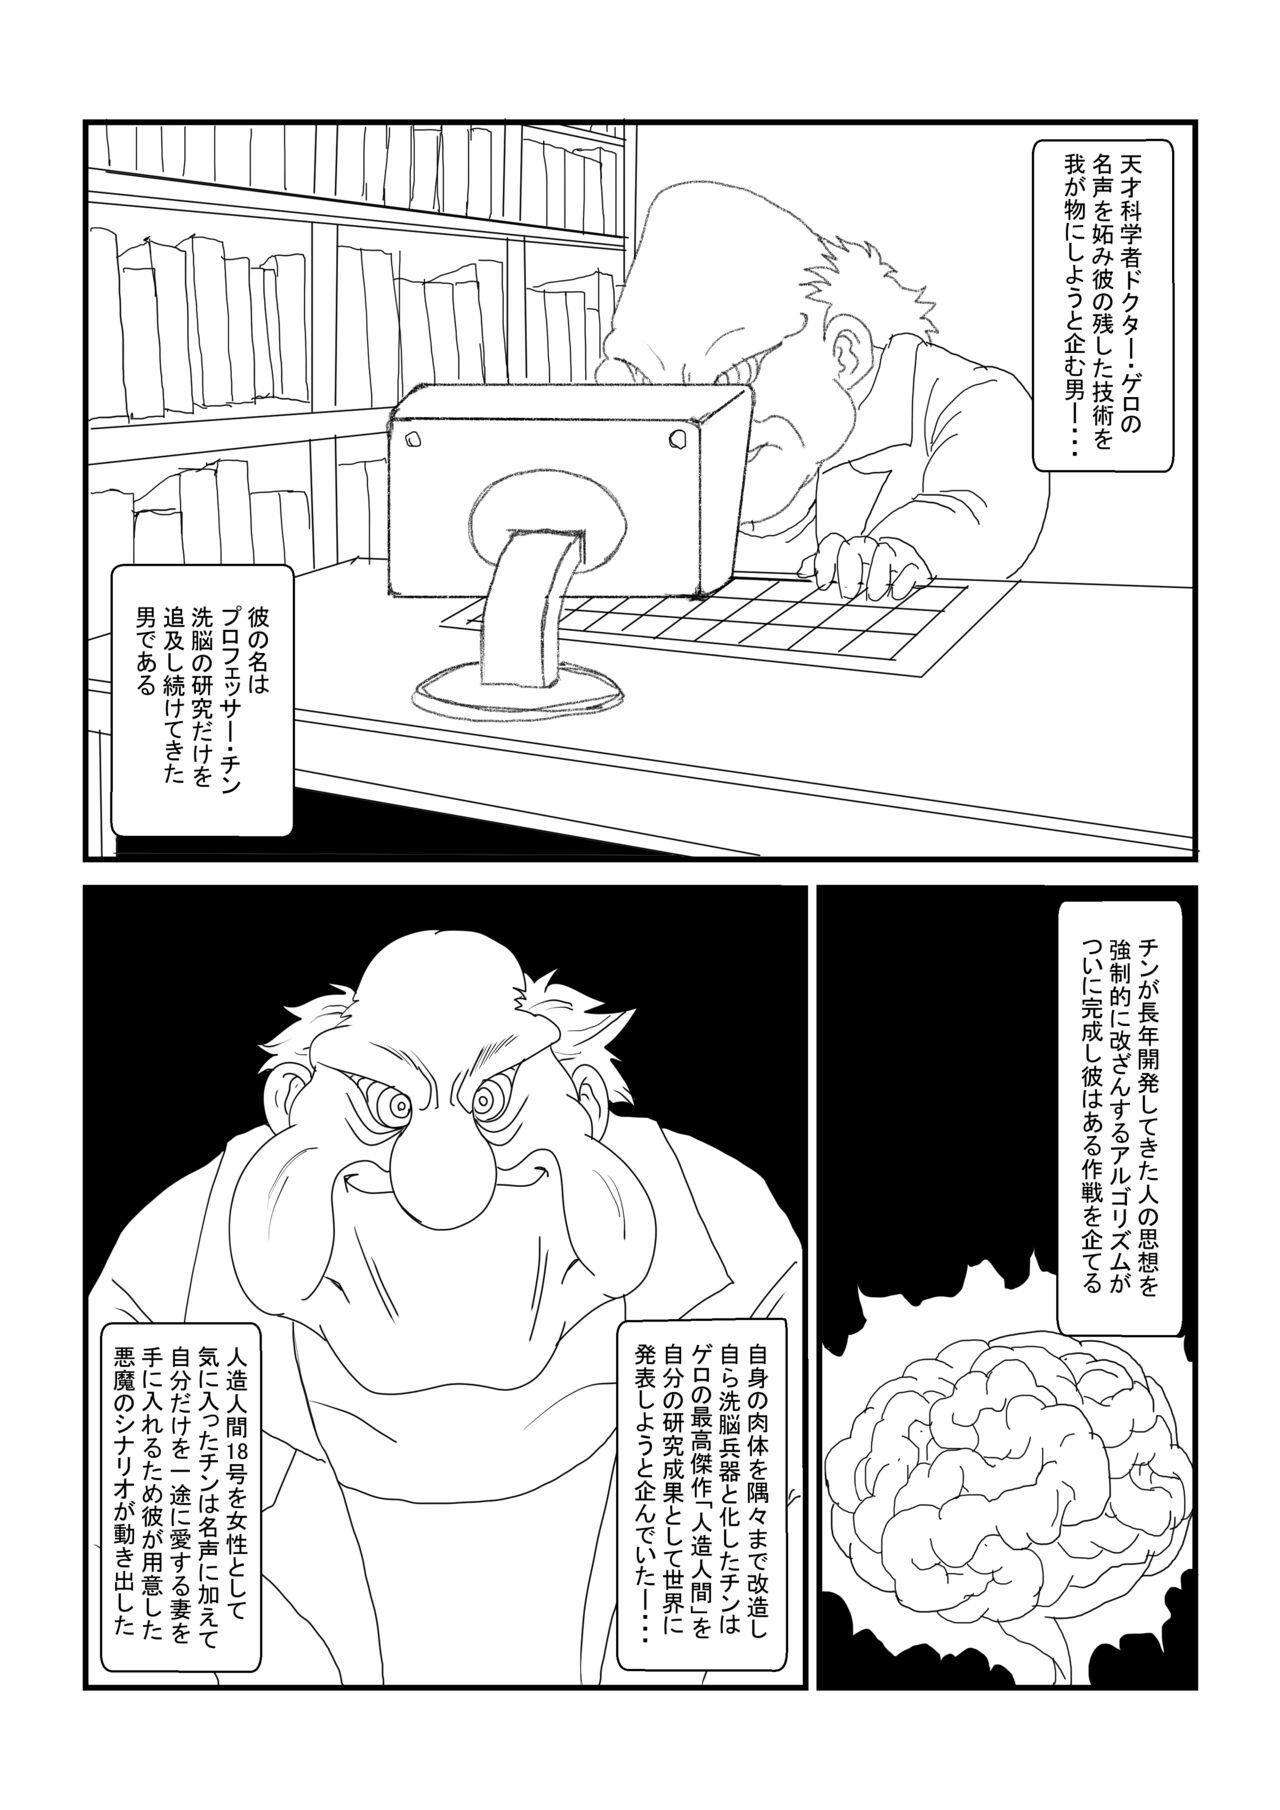 Interview Re:洗脳教育室～人造○間18号編～其之一 - Dragon ball z Banheiro - Page 2